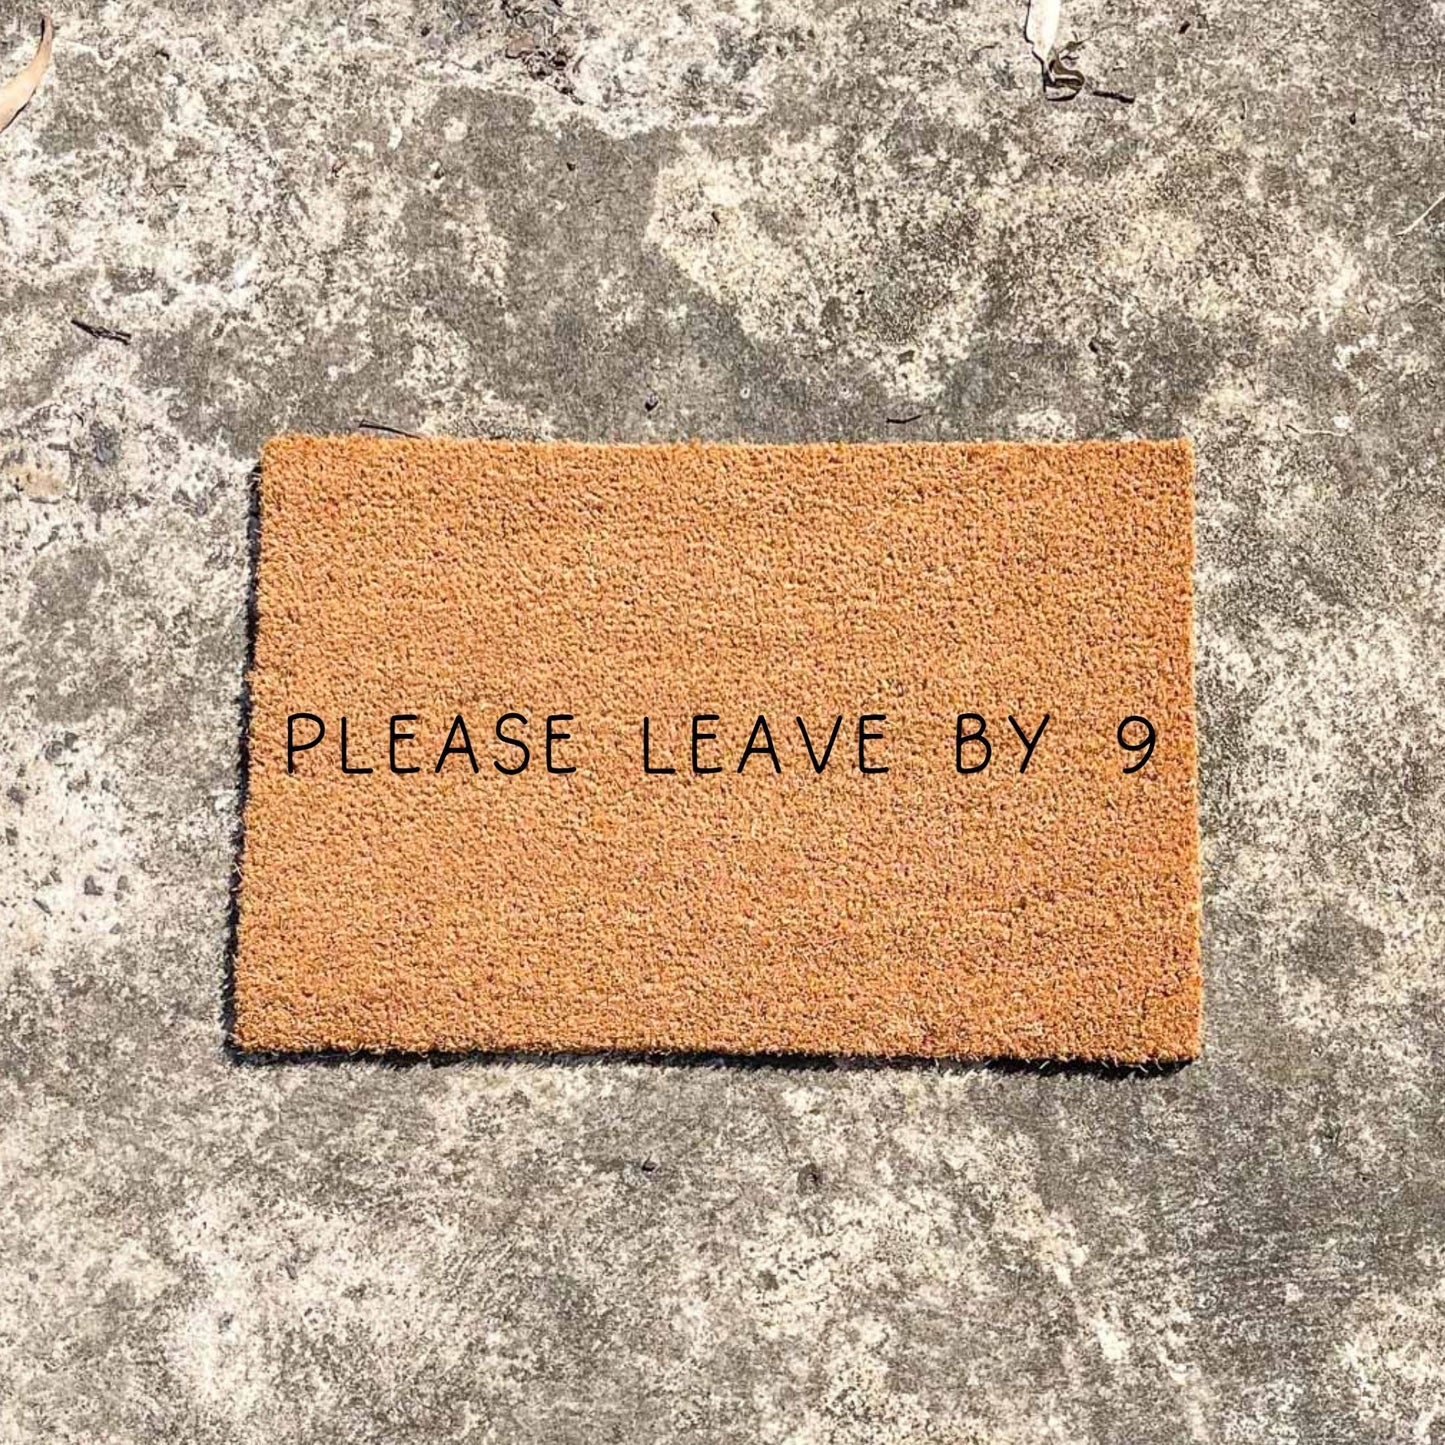 Please leave by 9 doormat, unique doormat, custom doormat, personalised doormat